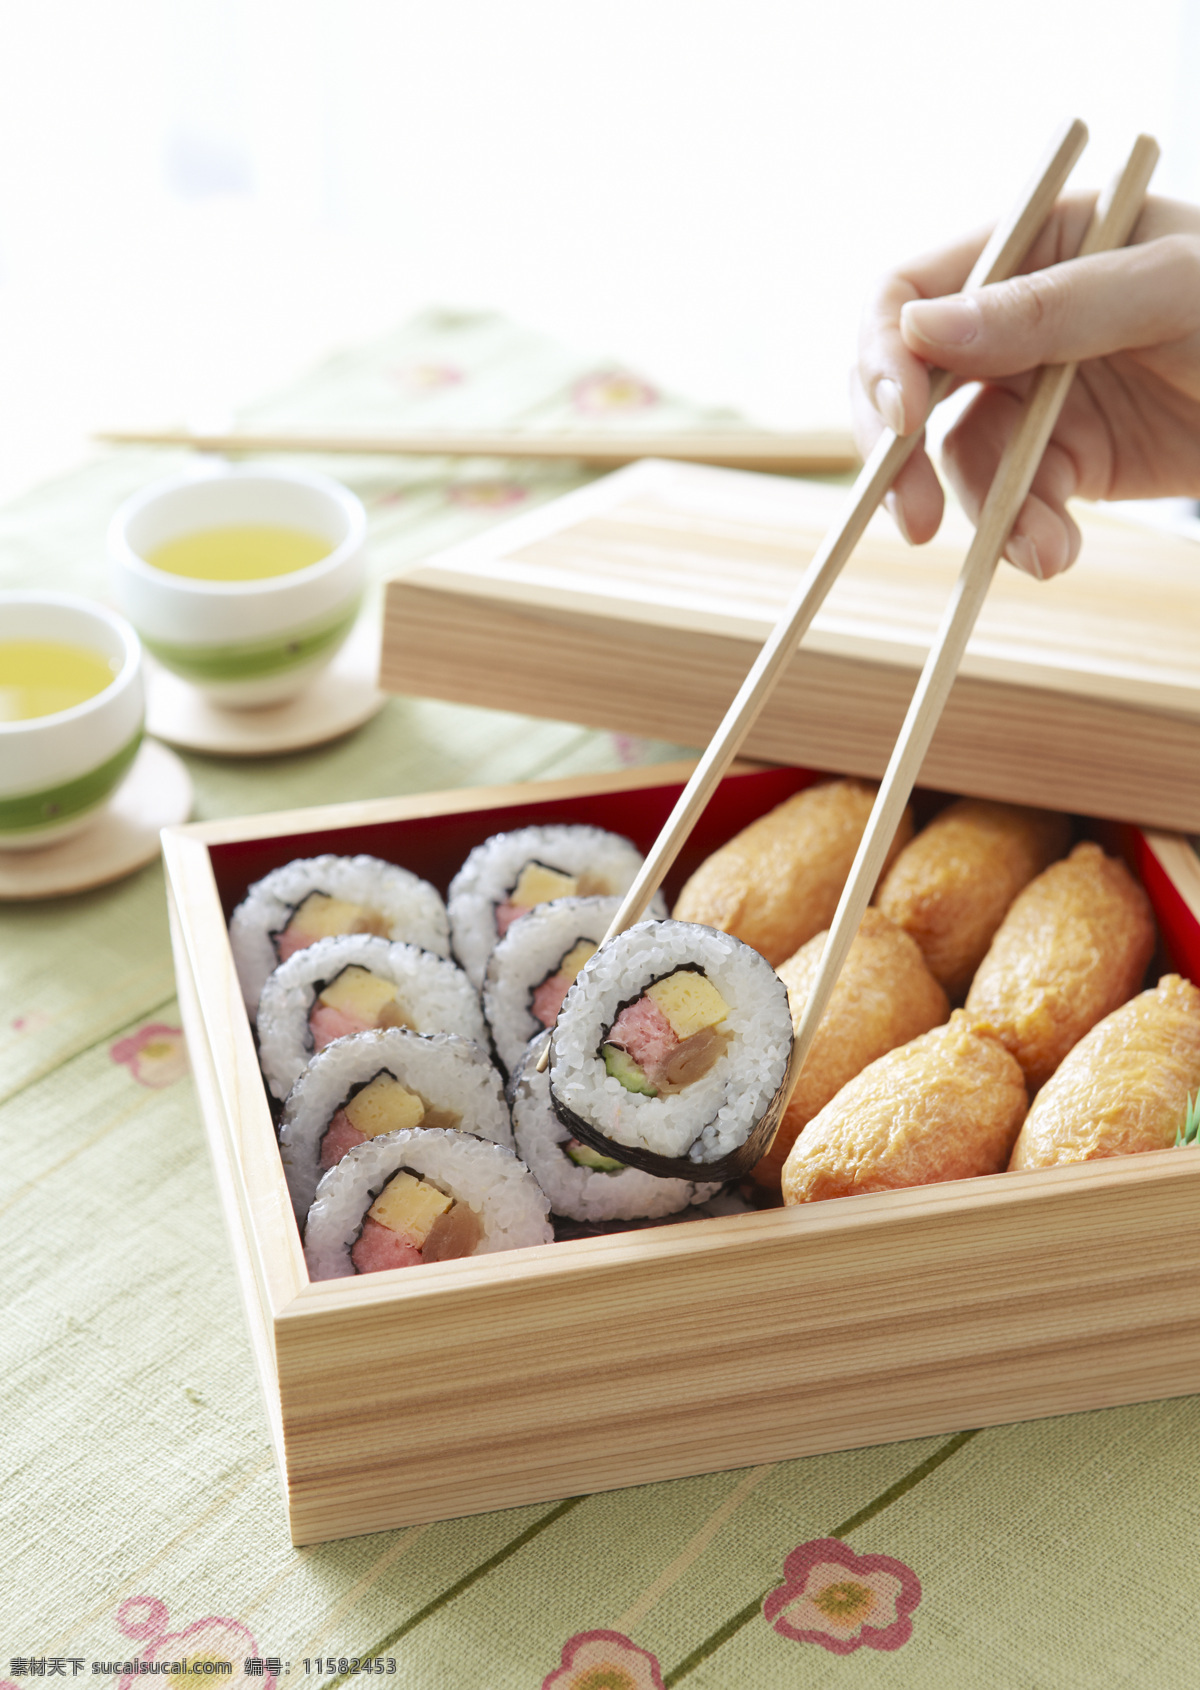 吃寿司 寿司 品尝寿司 做寿司 传统美食 餐饮美食